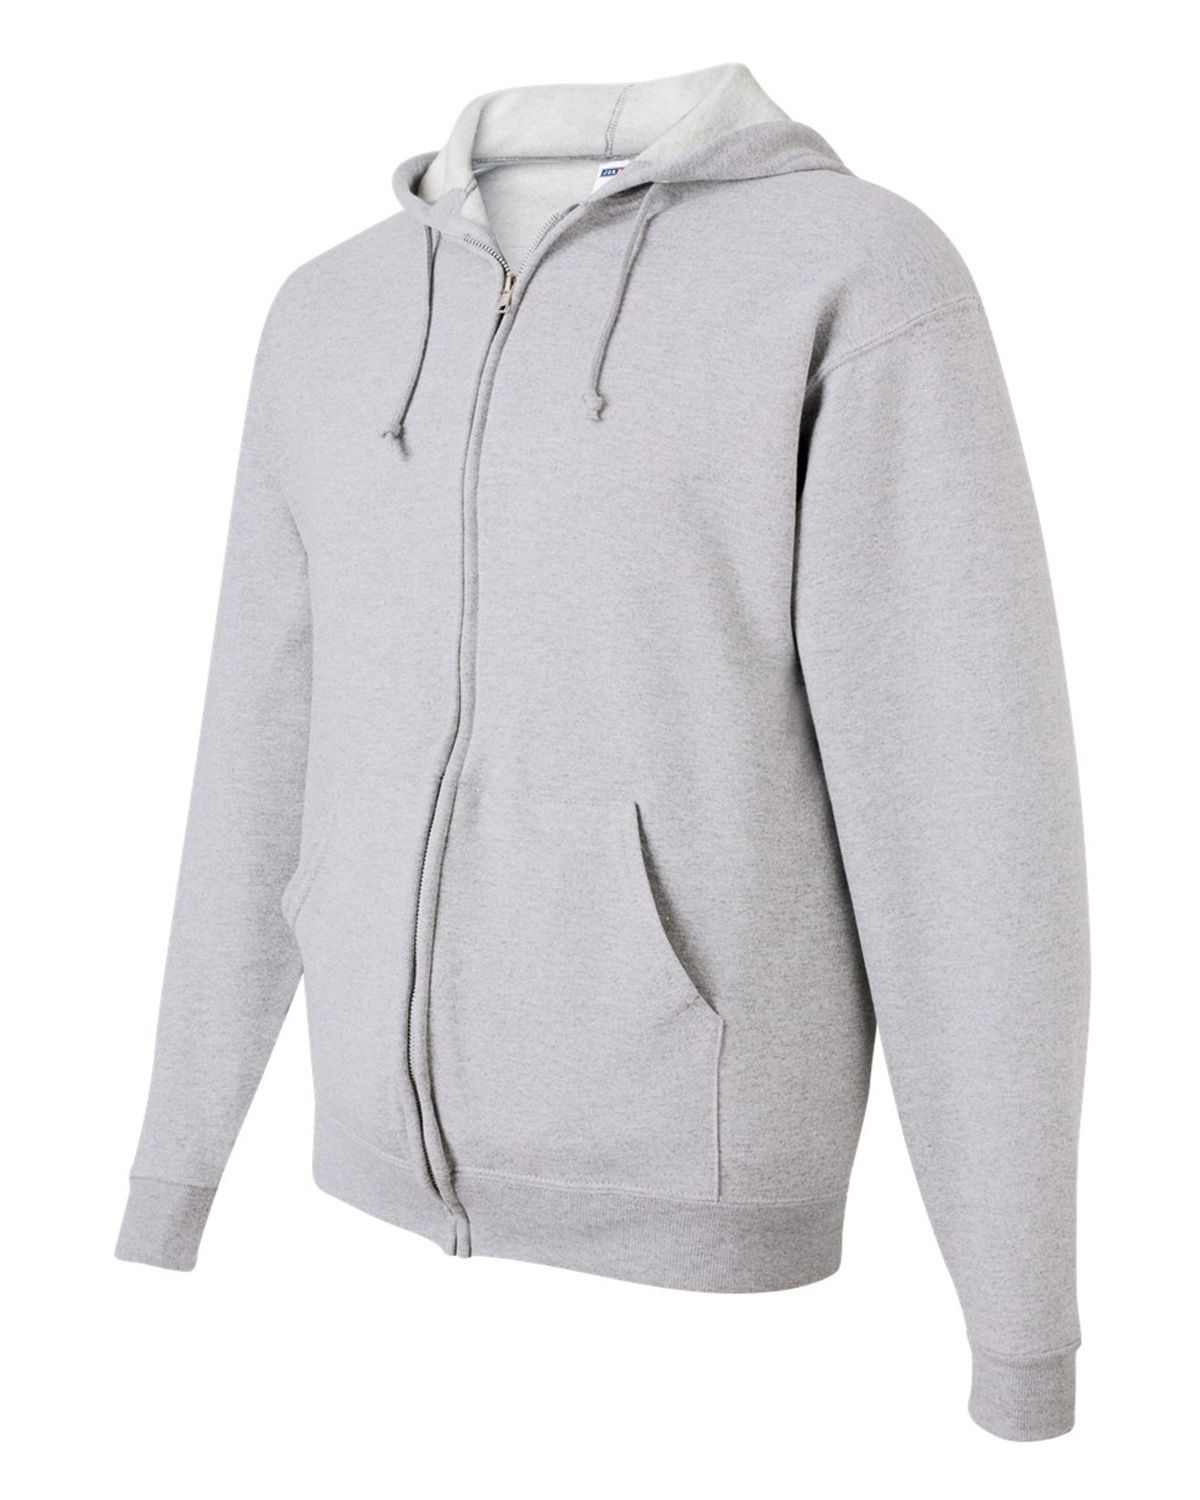 Reviews about Jerzees 993MR NuBlend Full-Zip Hooded Sweatshirt